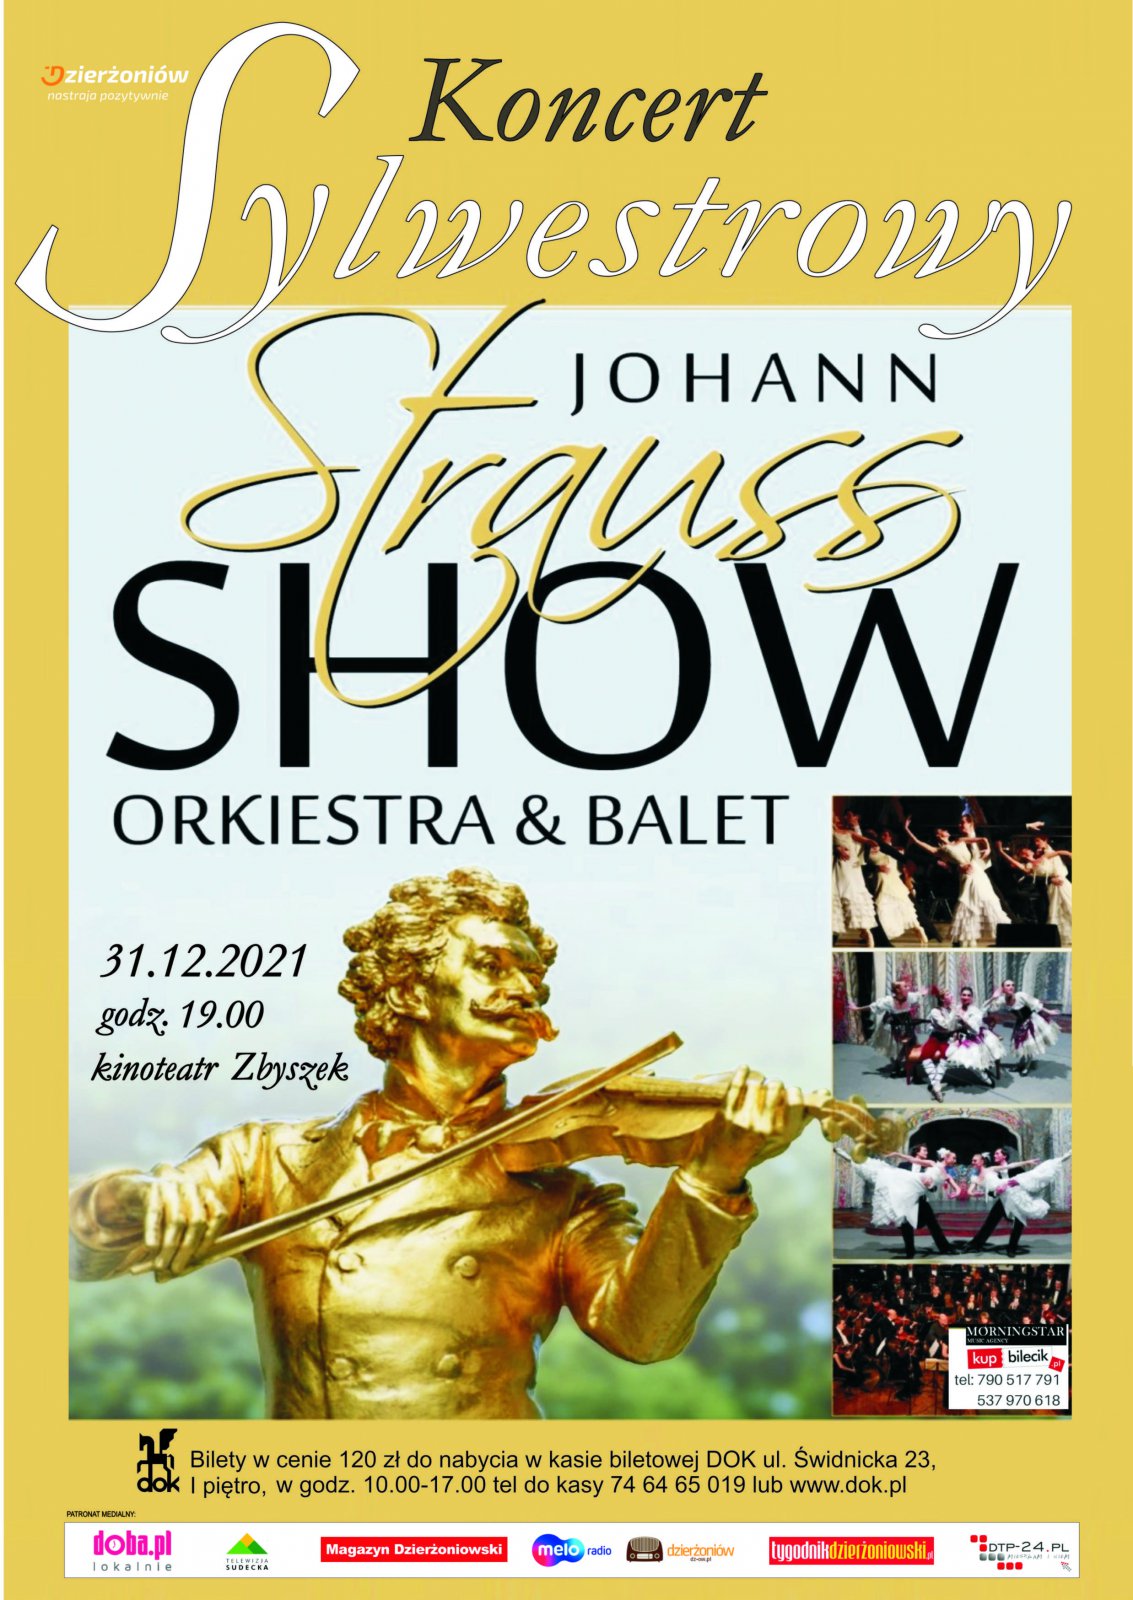 Plakat z informacją o miejscu i czasie koncertu oraz zdjęcire orkiestry